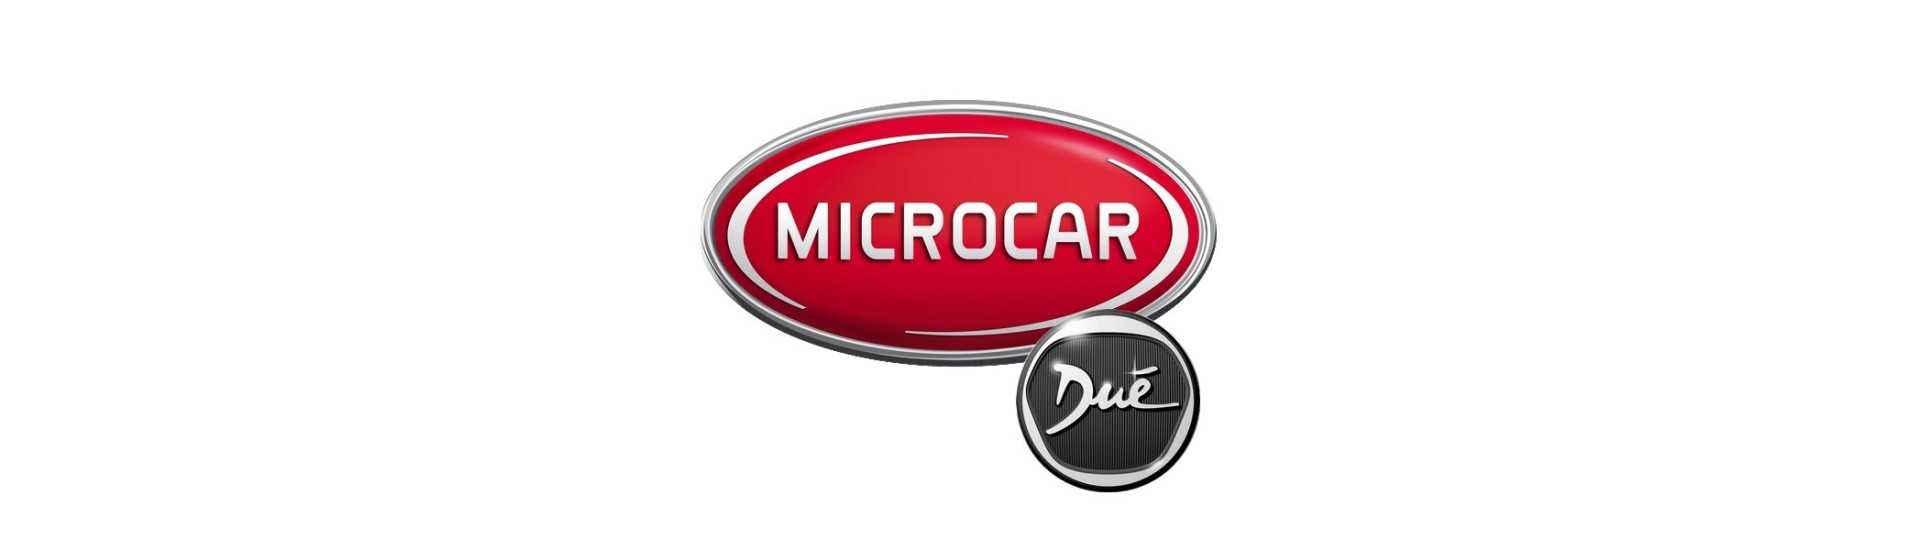 Serbatoio al miglior prezzo per auto senza permesso Microcar Dué